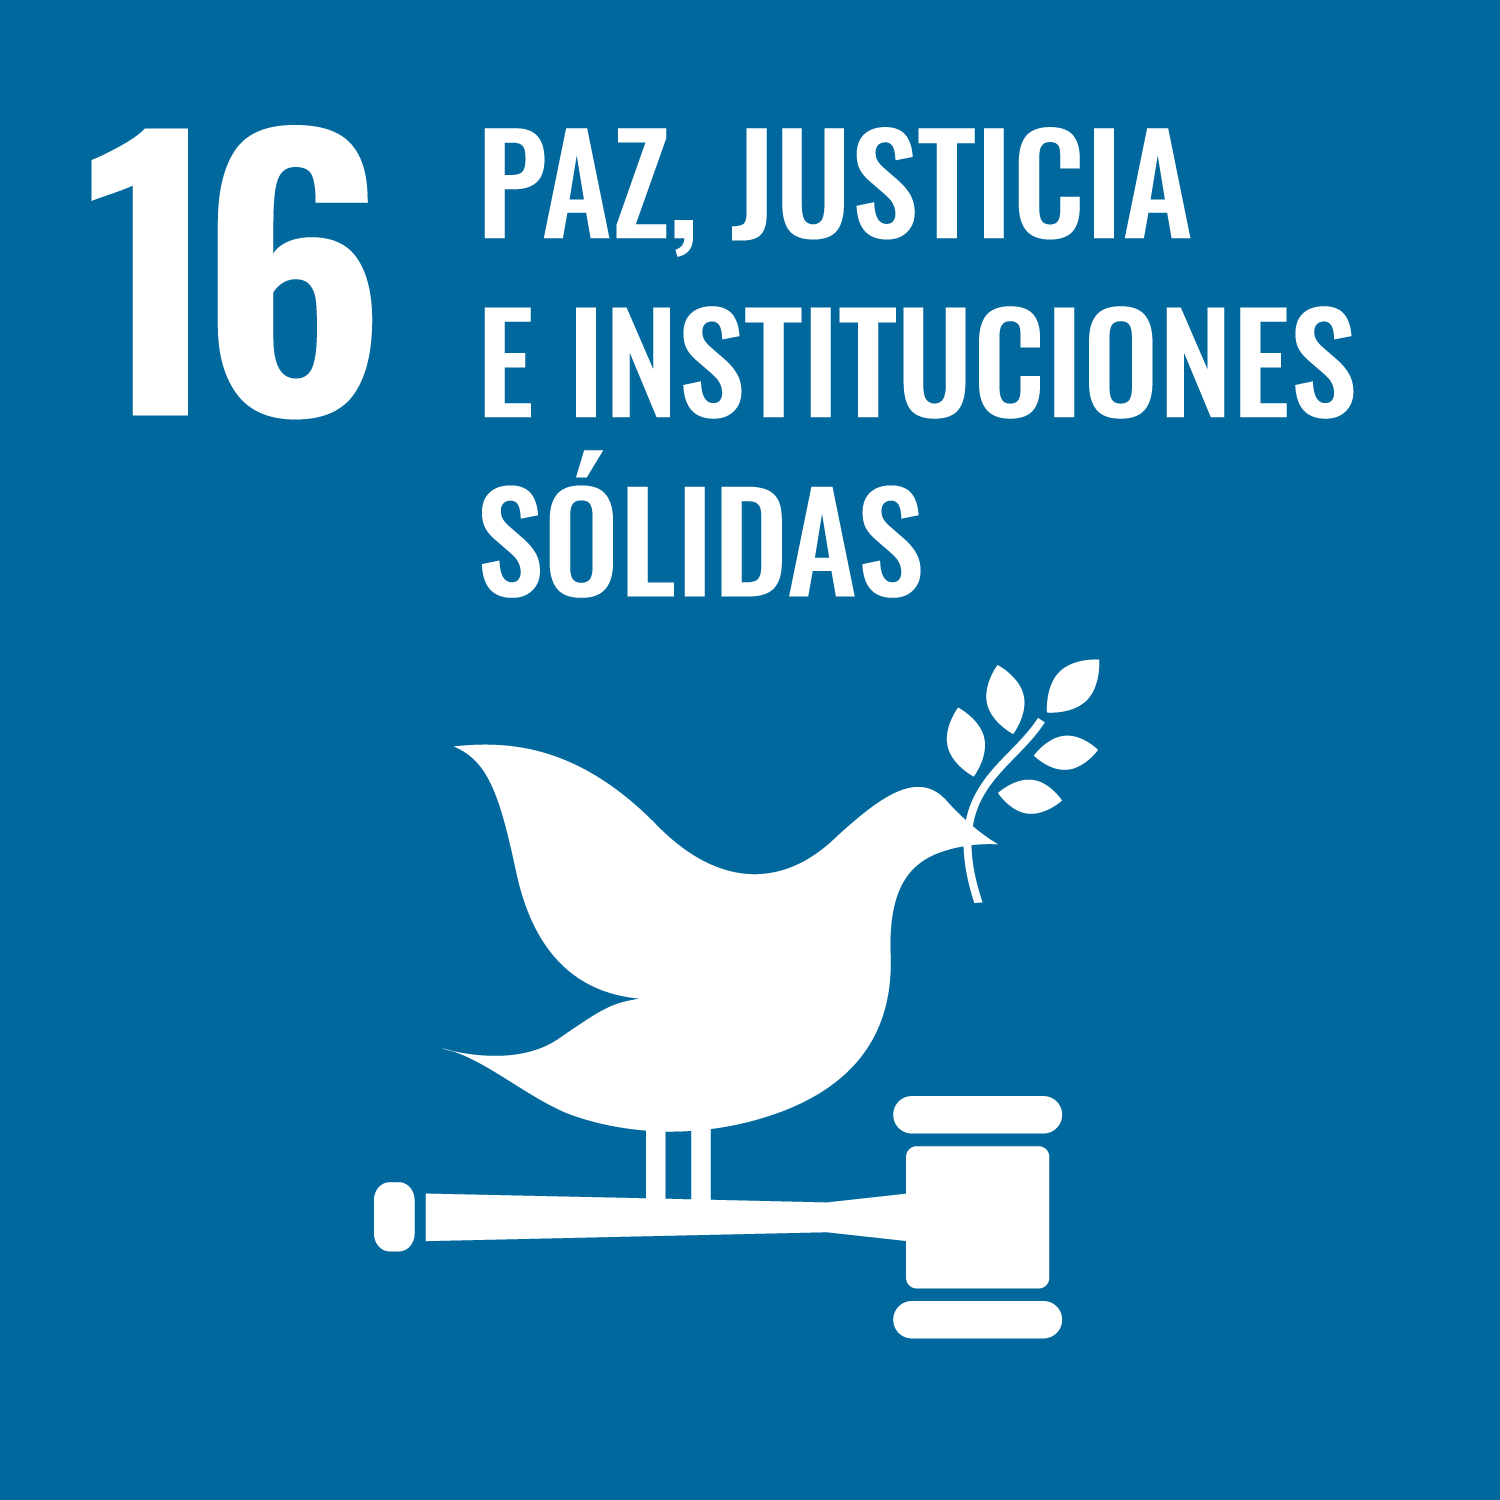 16. Promover sociedades pacíficas e inclusivas para el desarrollo sostenible, facilitar acceso a la justicia para todos y crear instituciones eficaces, responsables e inclusivas a todos los niveles.